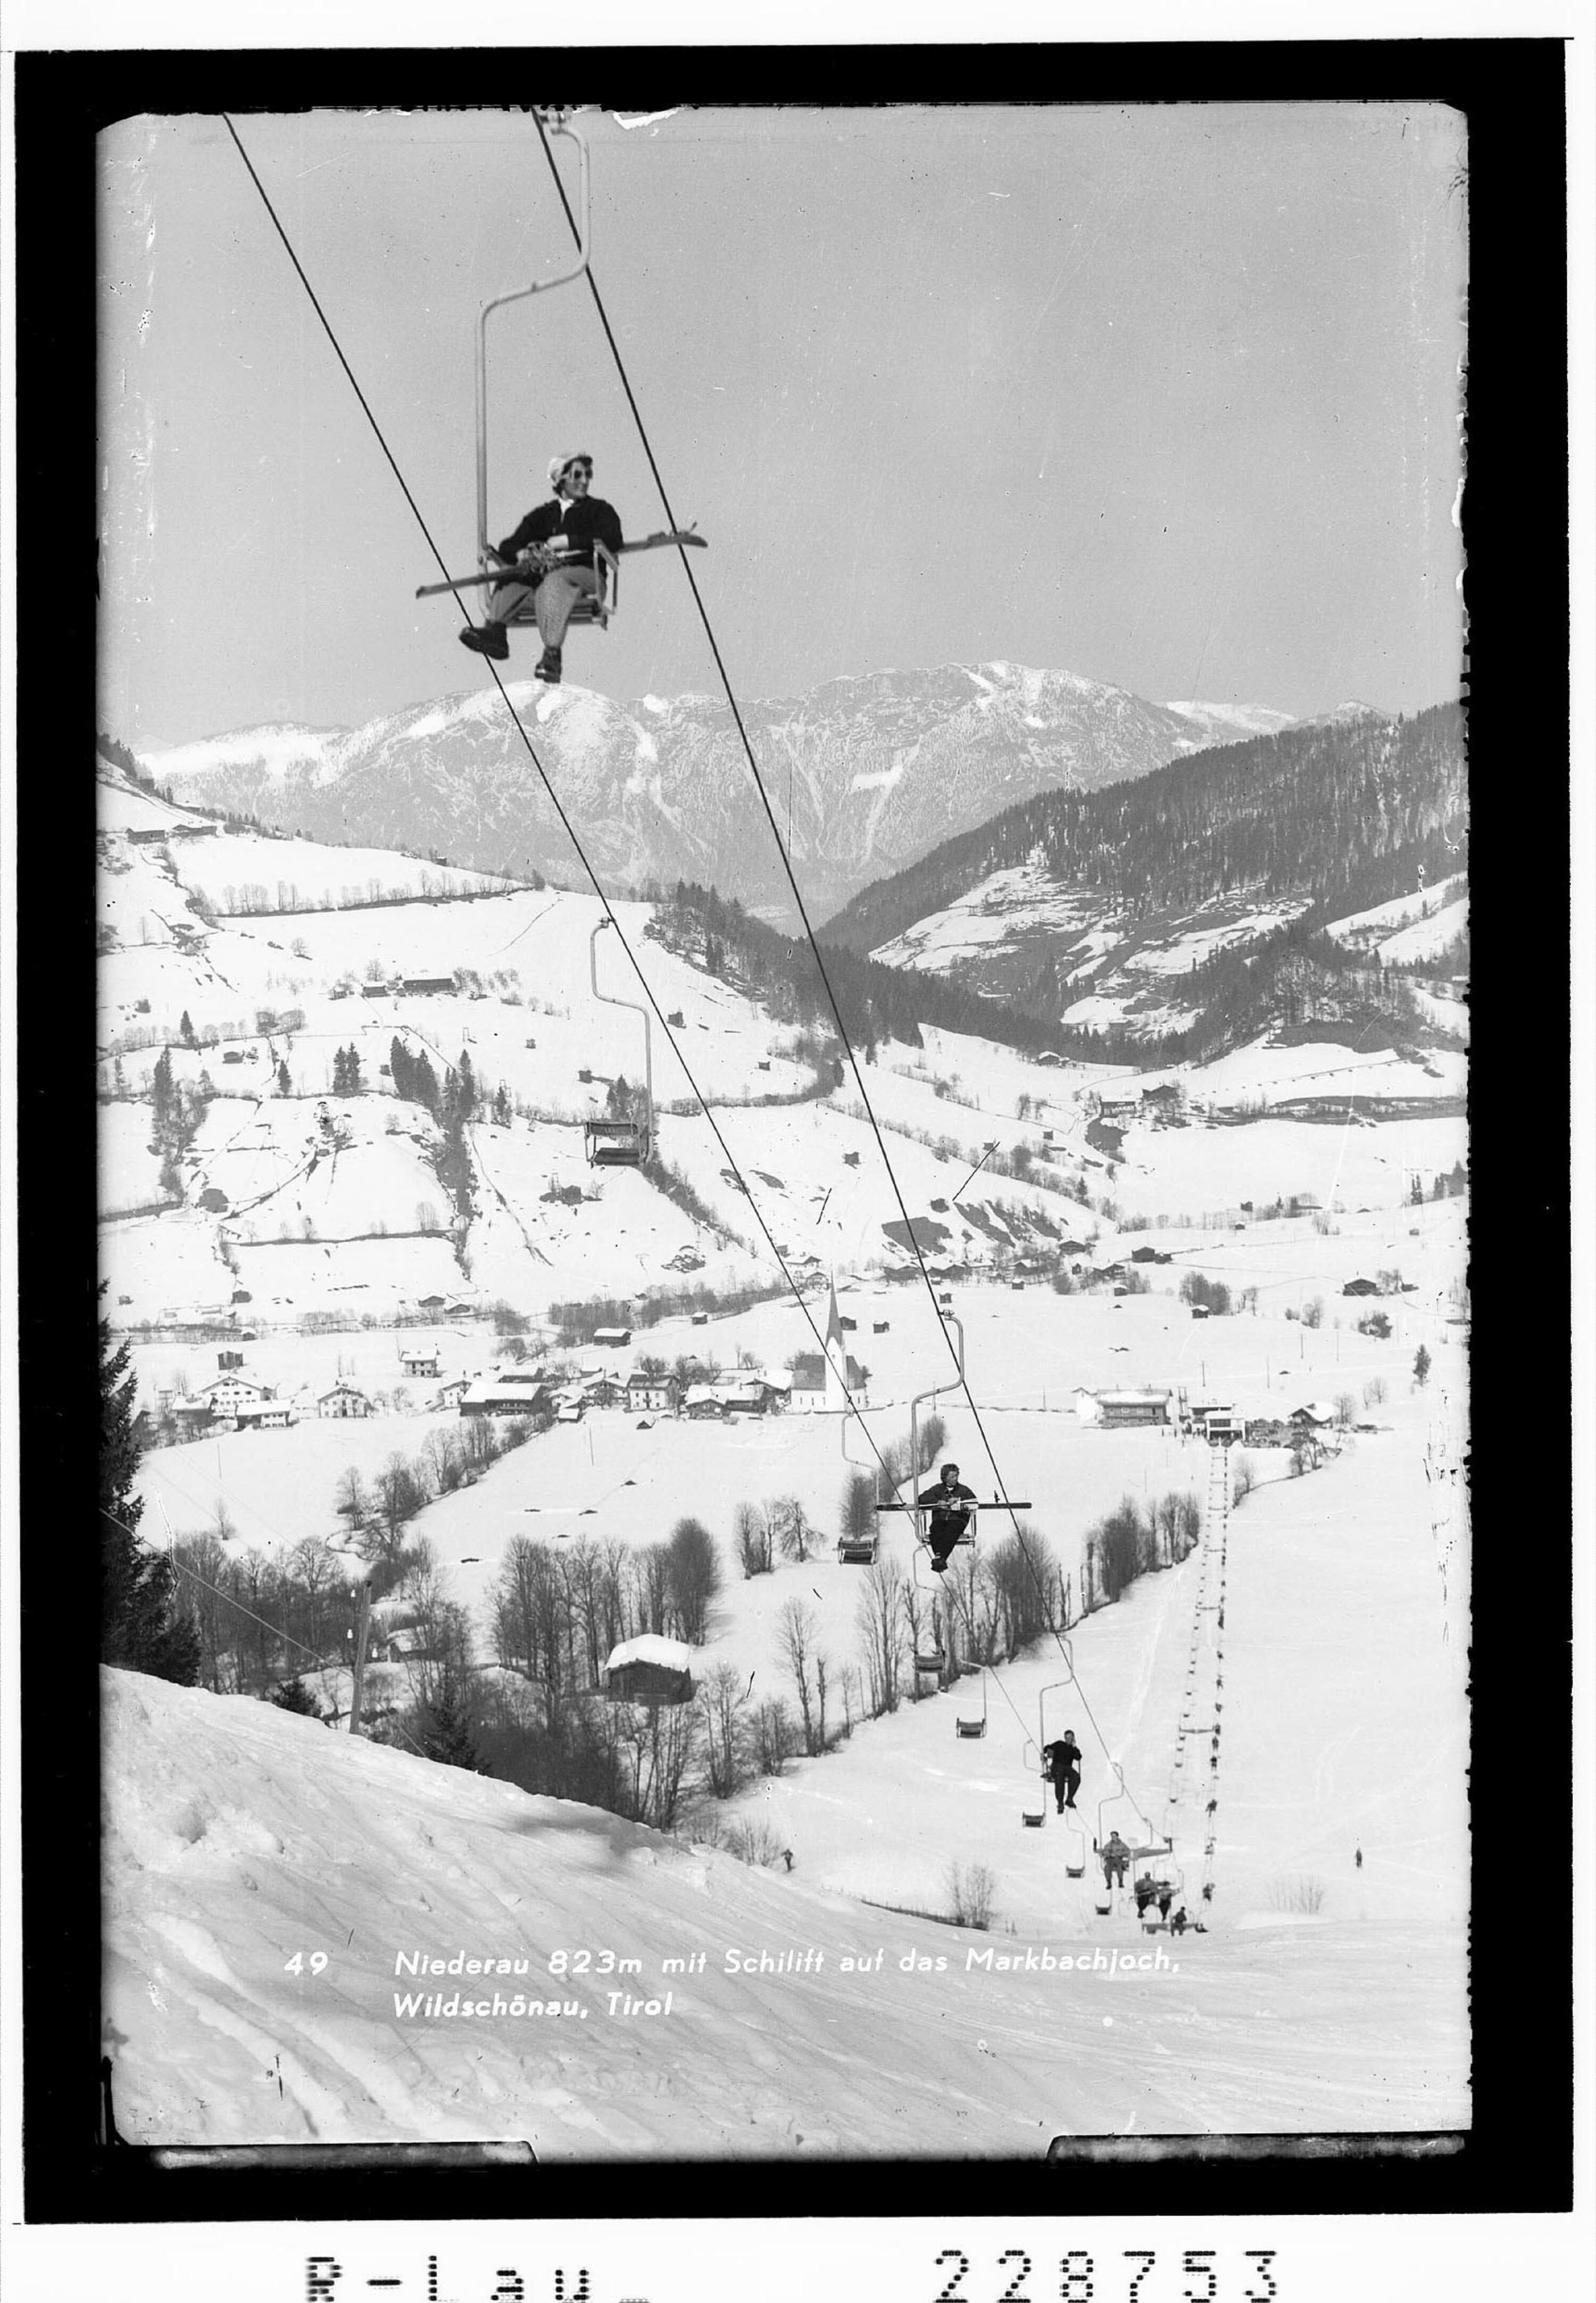 Niederau 823 m mit Skilift auf das Markbachjoch / Wildschönau / Tirol></div>


    <hr>
    <div class=